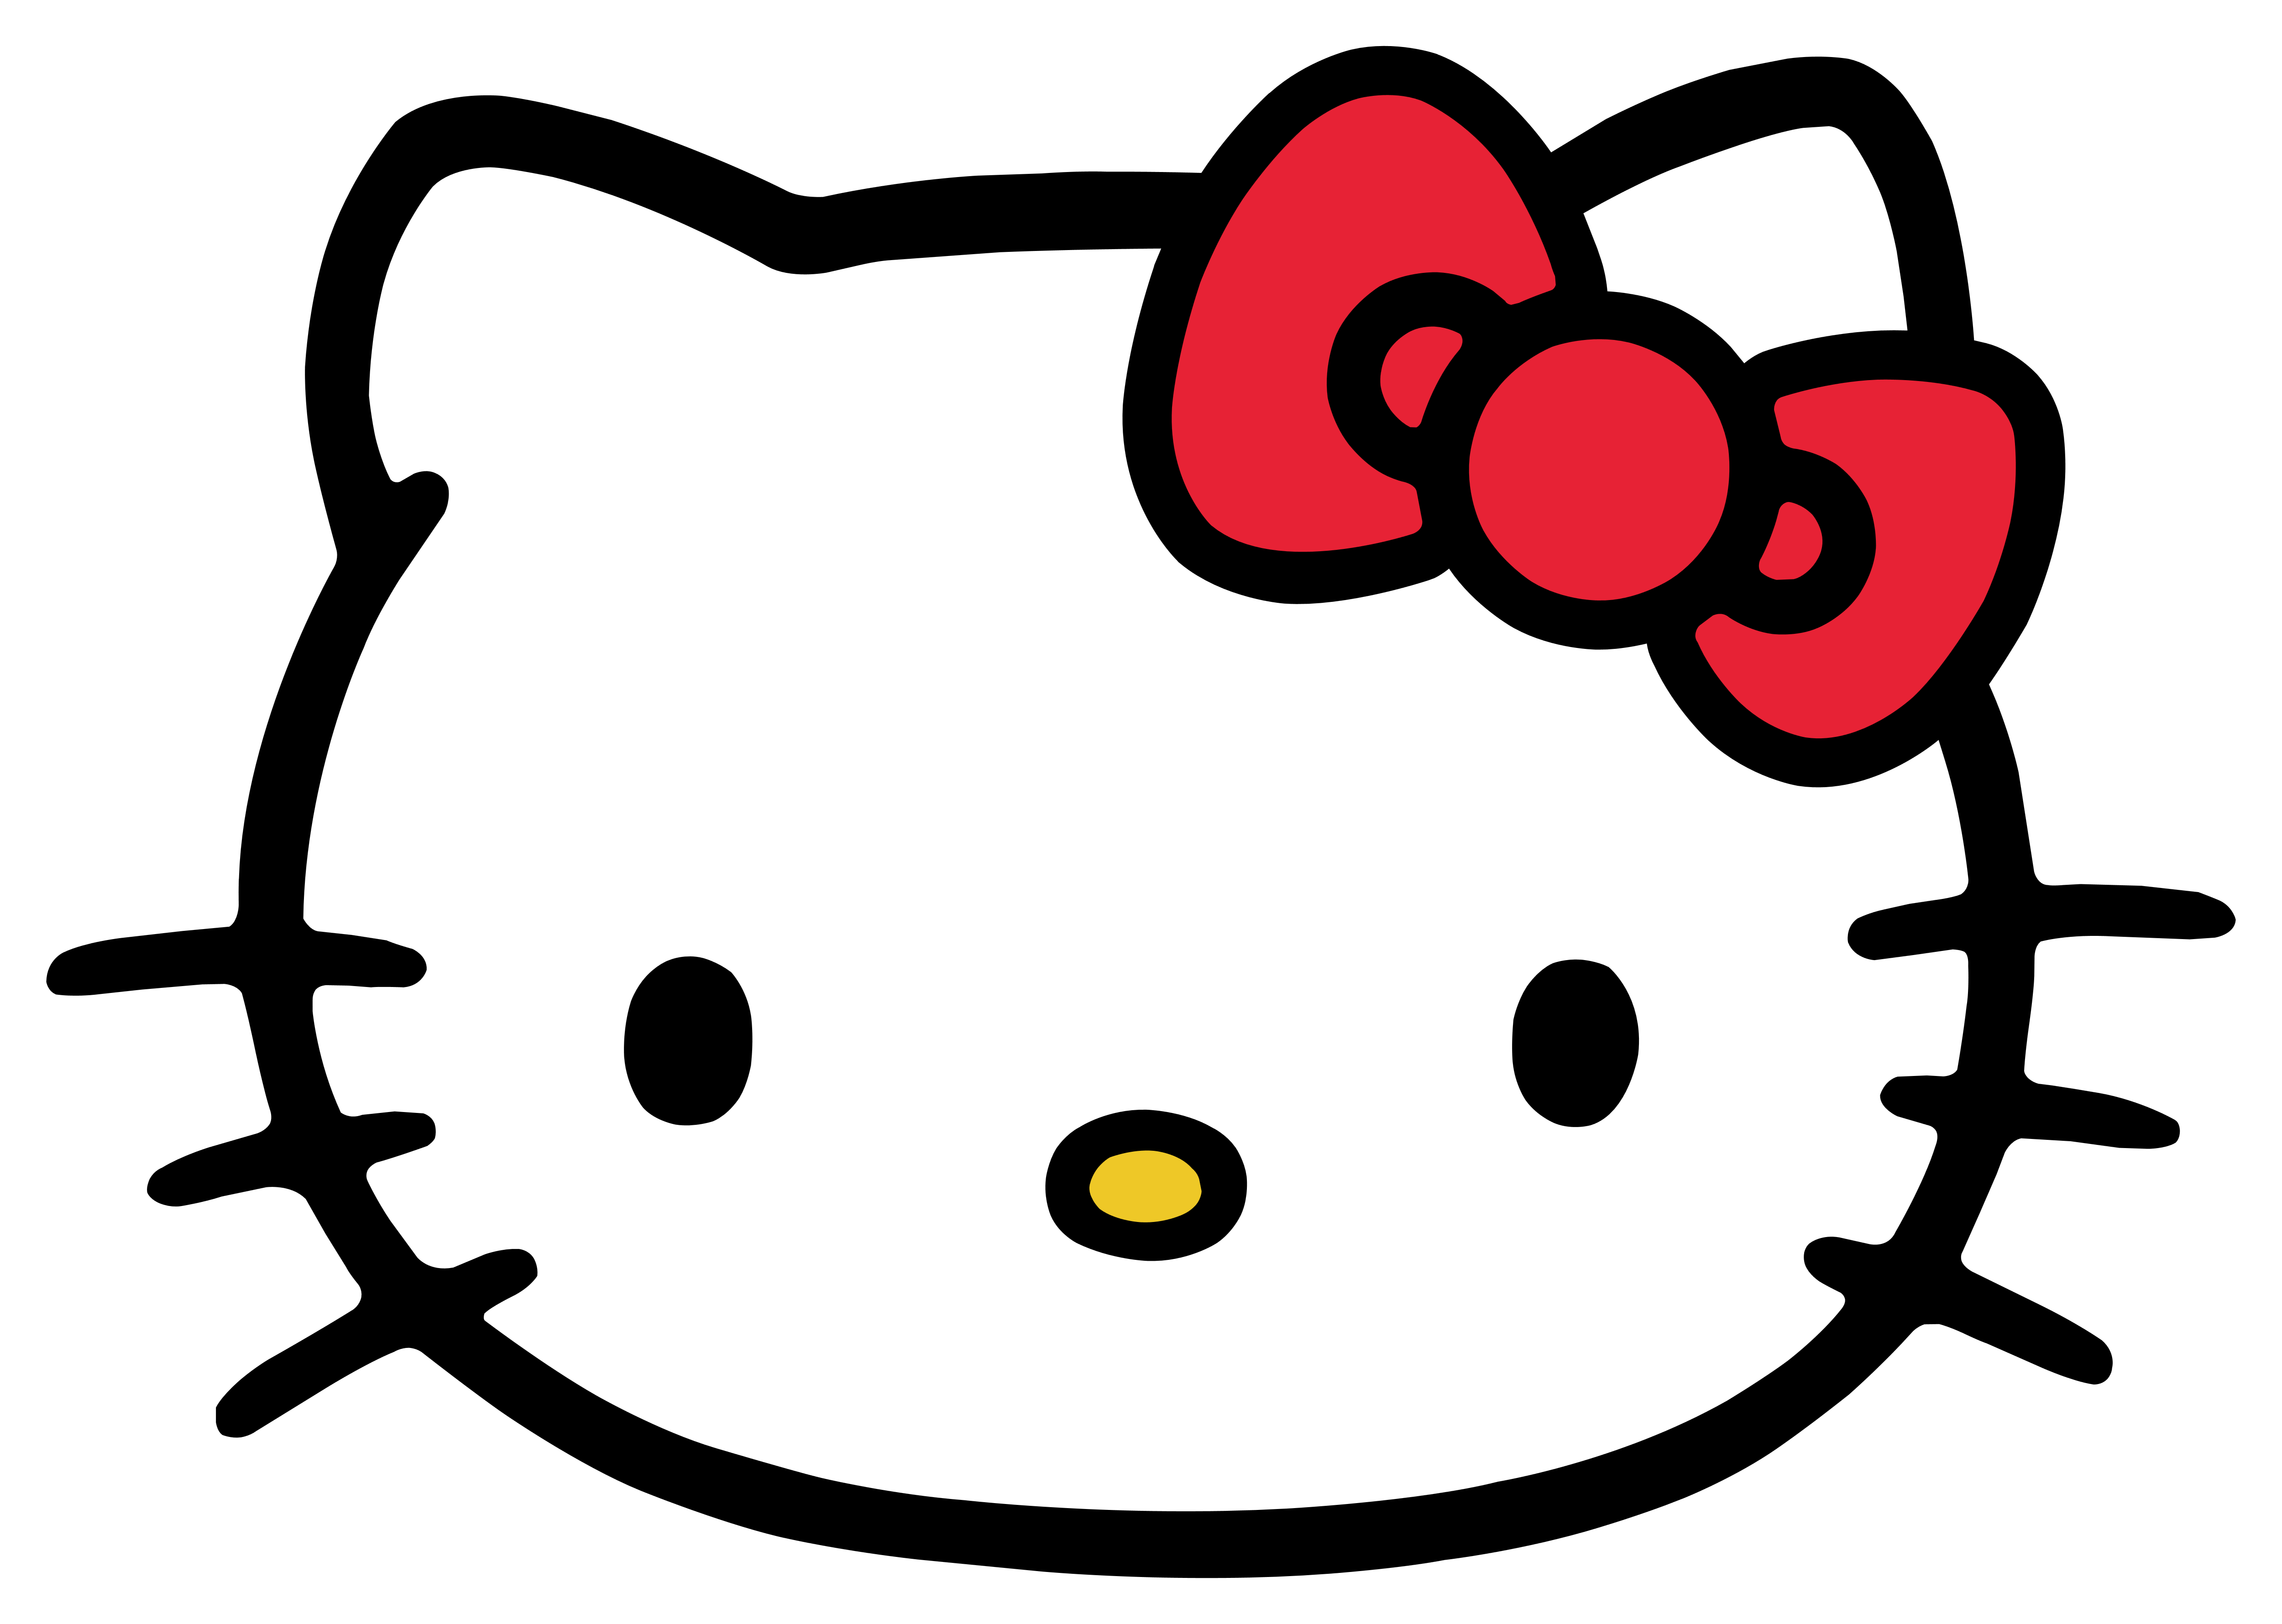 Hello Kitty – Logos Download